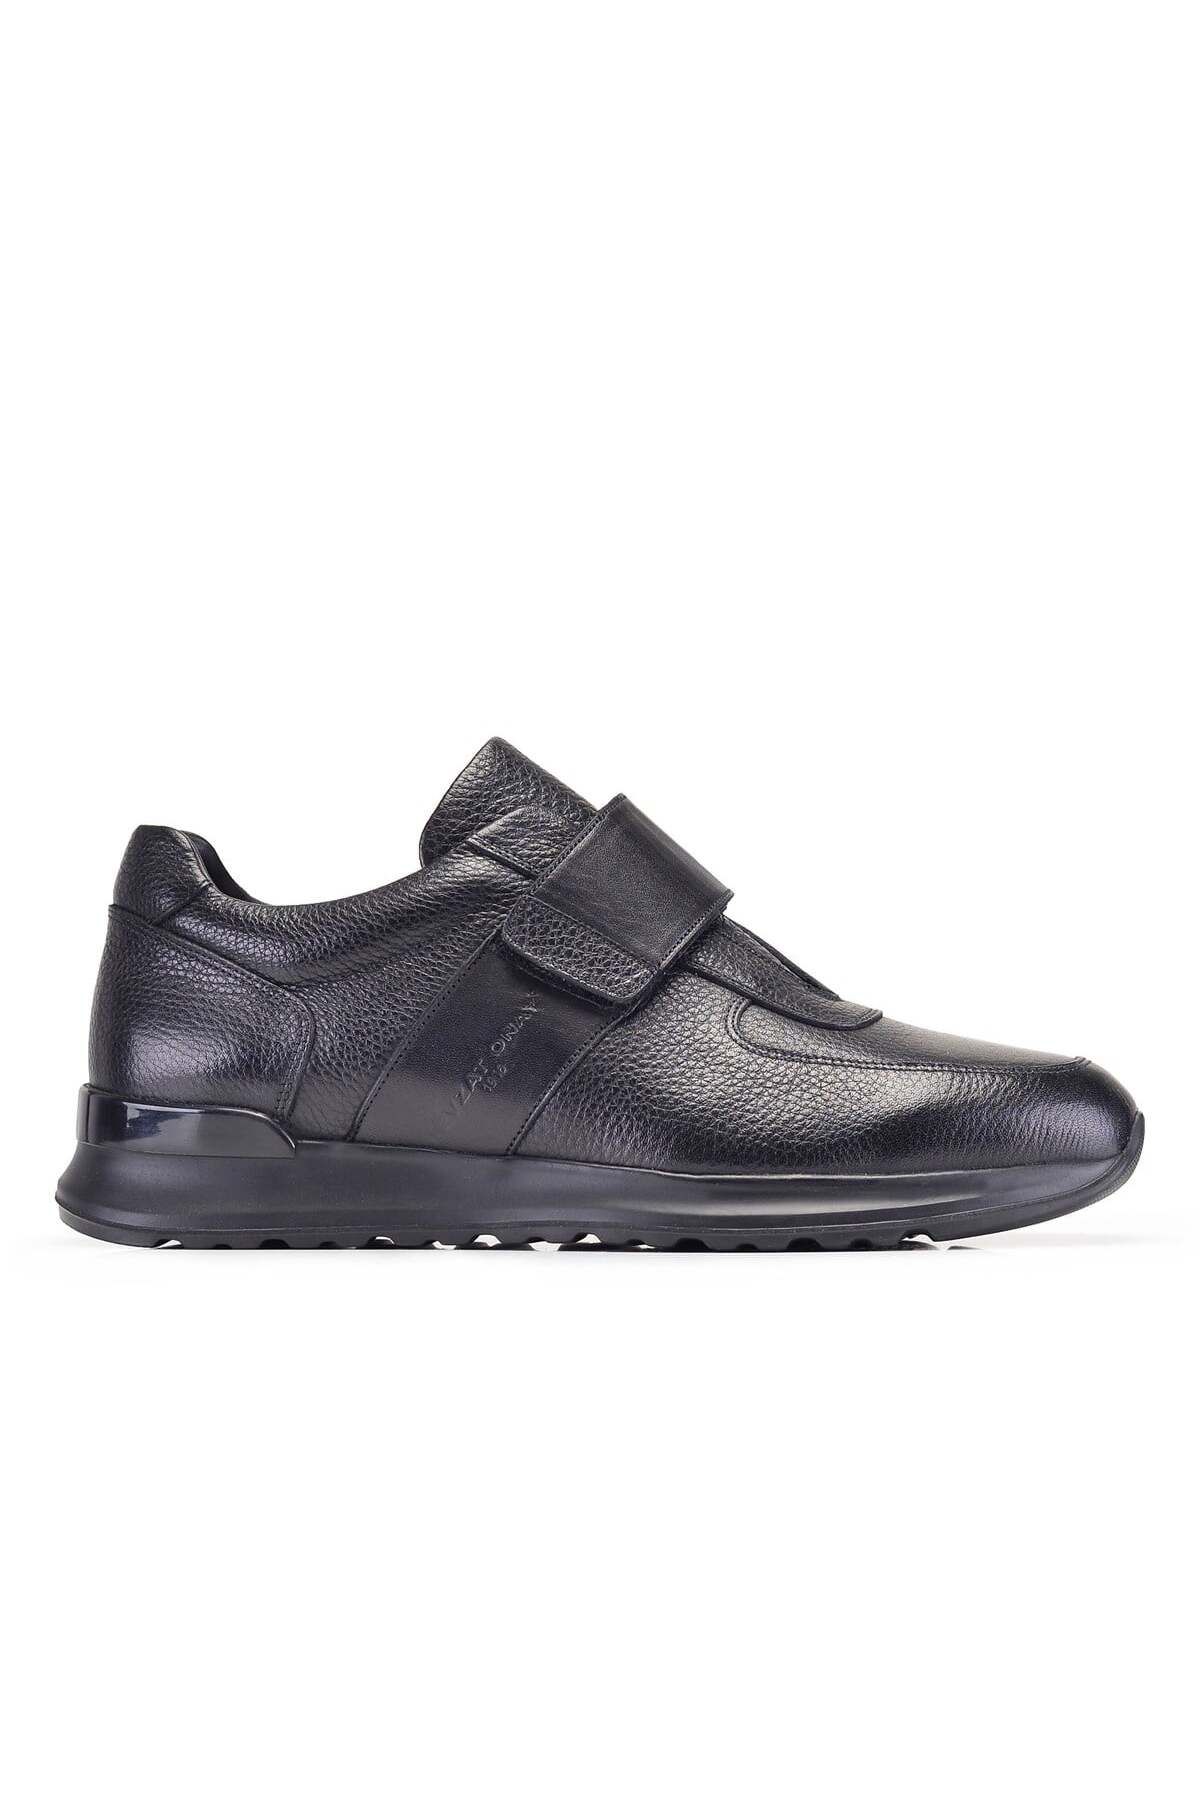 Nevzat Onay Siyah Sneaker Erkek Ayakkabı -11839-